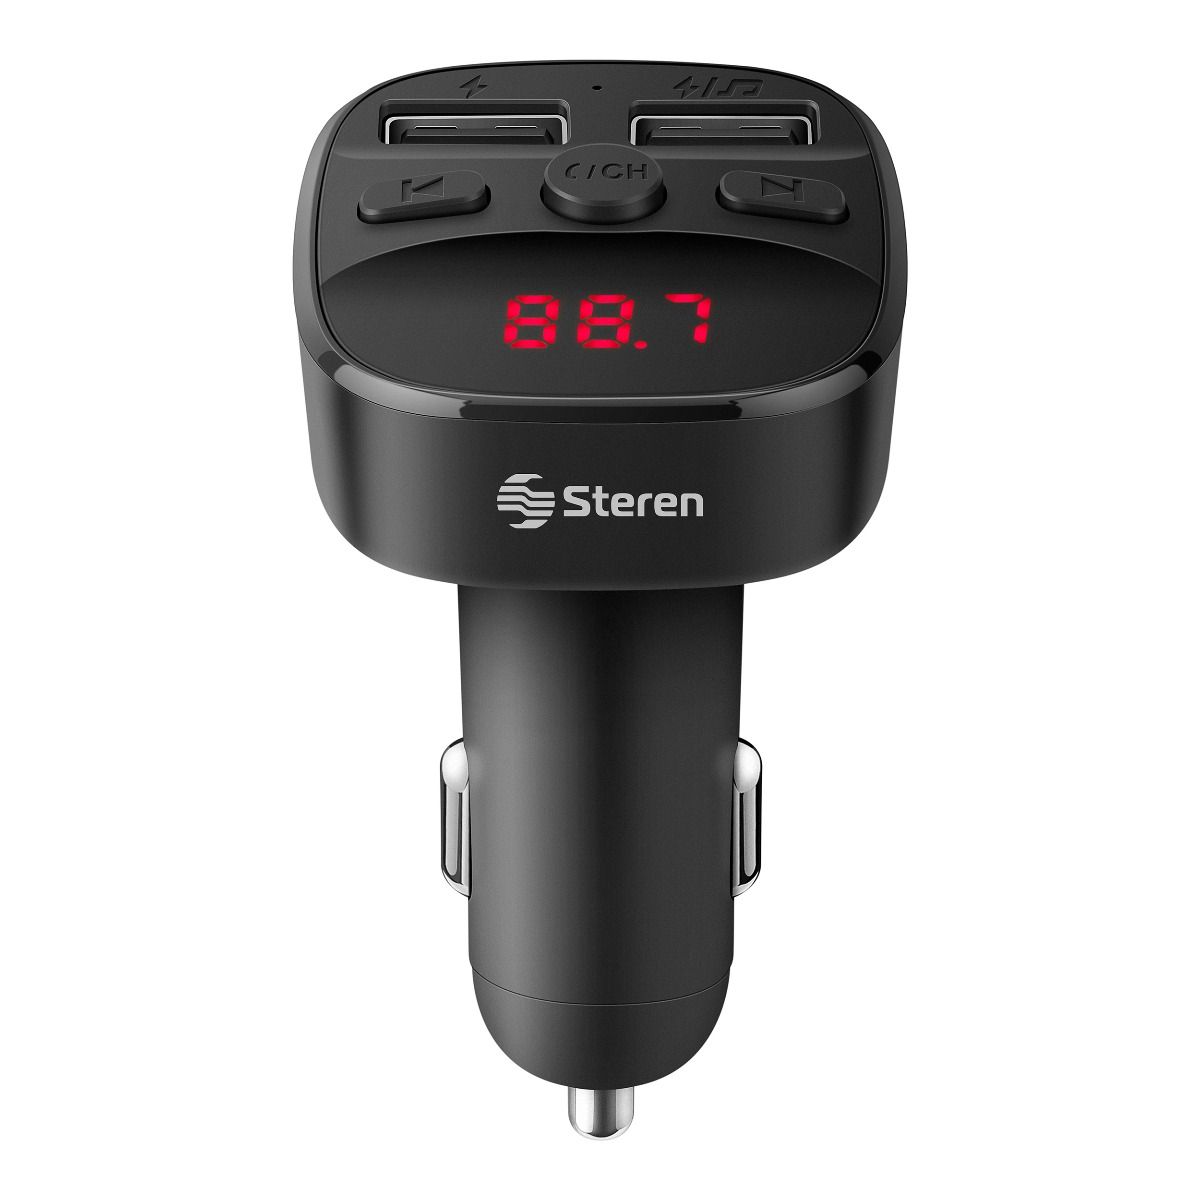 Transmisor FM Bluetooth para coche, reproductor de MP3 transmisor Bluetooth  5.0 inalámbrico manos libres 2 cargador USB, reproductor de música